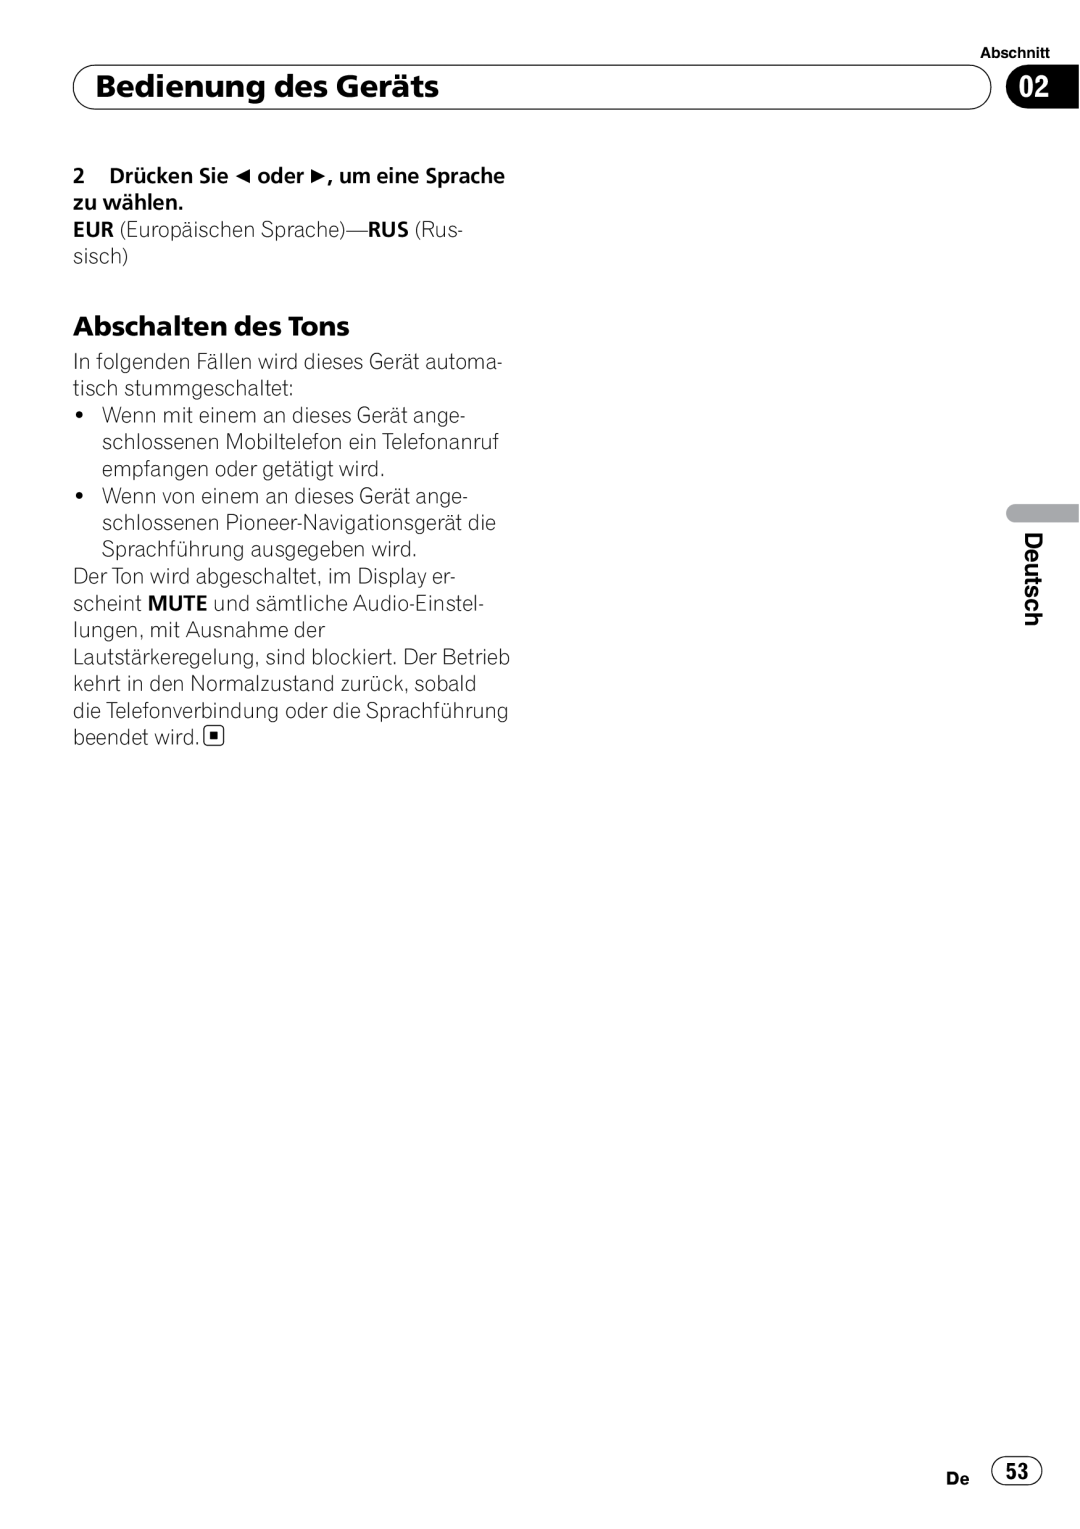 Pioneer DEH-3000MP operation manual Abschalten des Tons, Bedienung des Geräts, Deutsch 